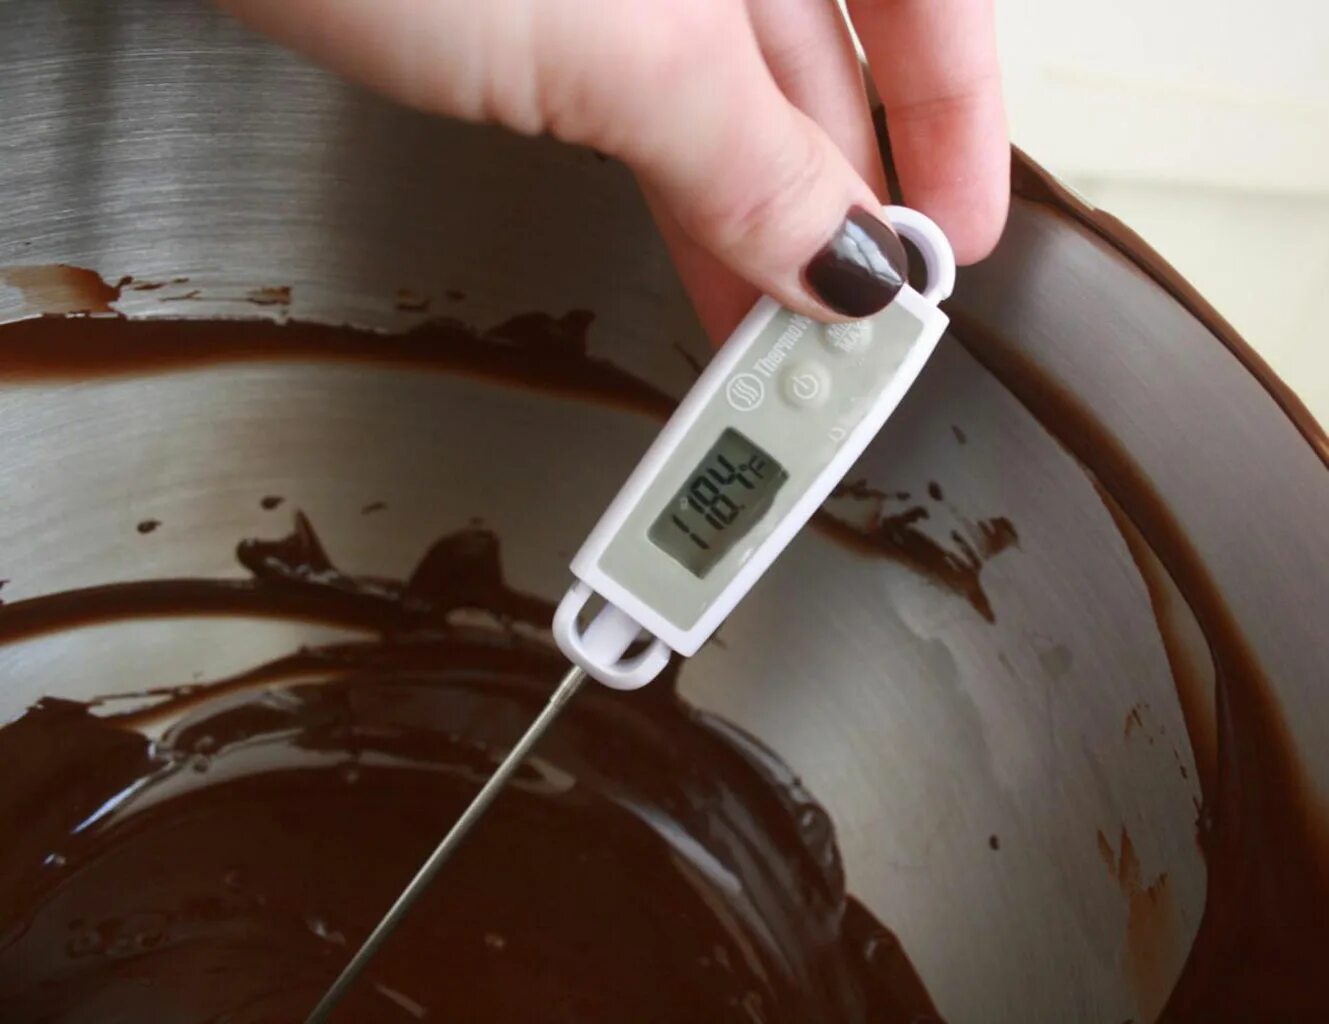 Ванна для темперирования шоколада 1.5 литра. Темперирование шоколада. Шоколад для темперирования. Темперировать темный шоколад.